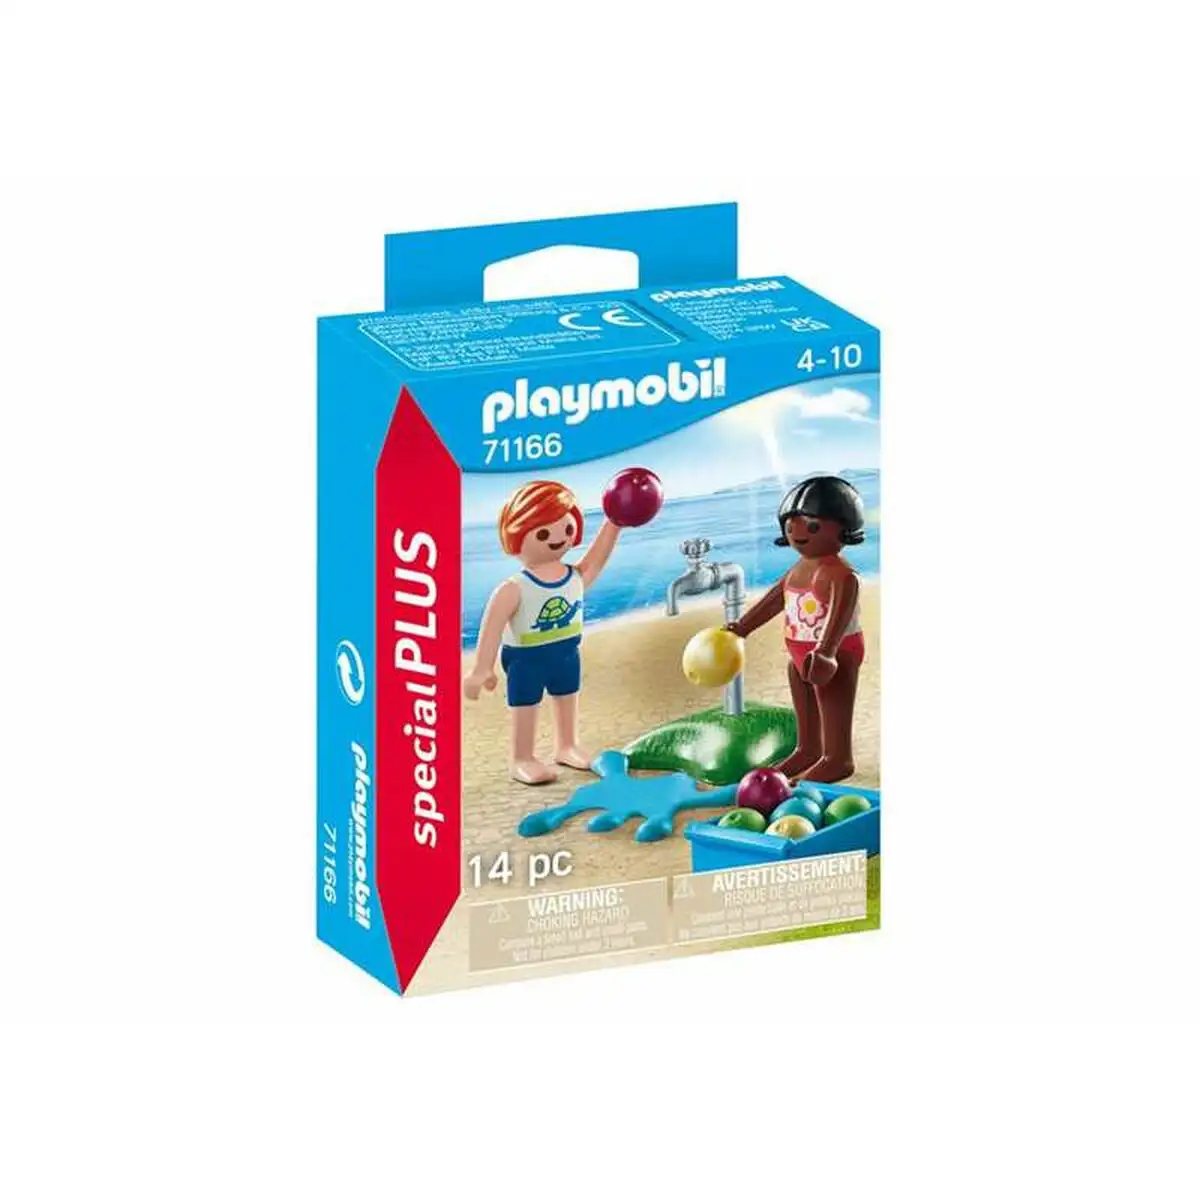 Playset playmobil 71166 special plus kids with water balloons 14 pieces_7713. DIAYTAR SENEGAL - Votre Destination pour un Shopping Réfléchi. Découvrez notre gamme variée et choisissez des produits qui correspondent à vos valeurs et à votre style de vie.